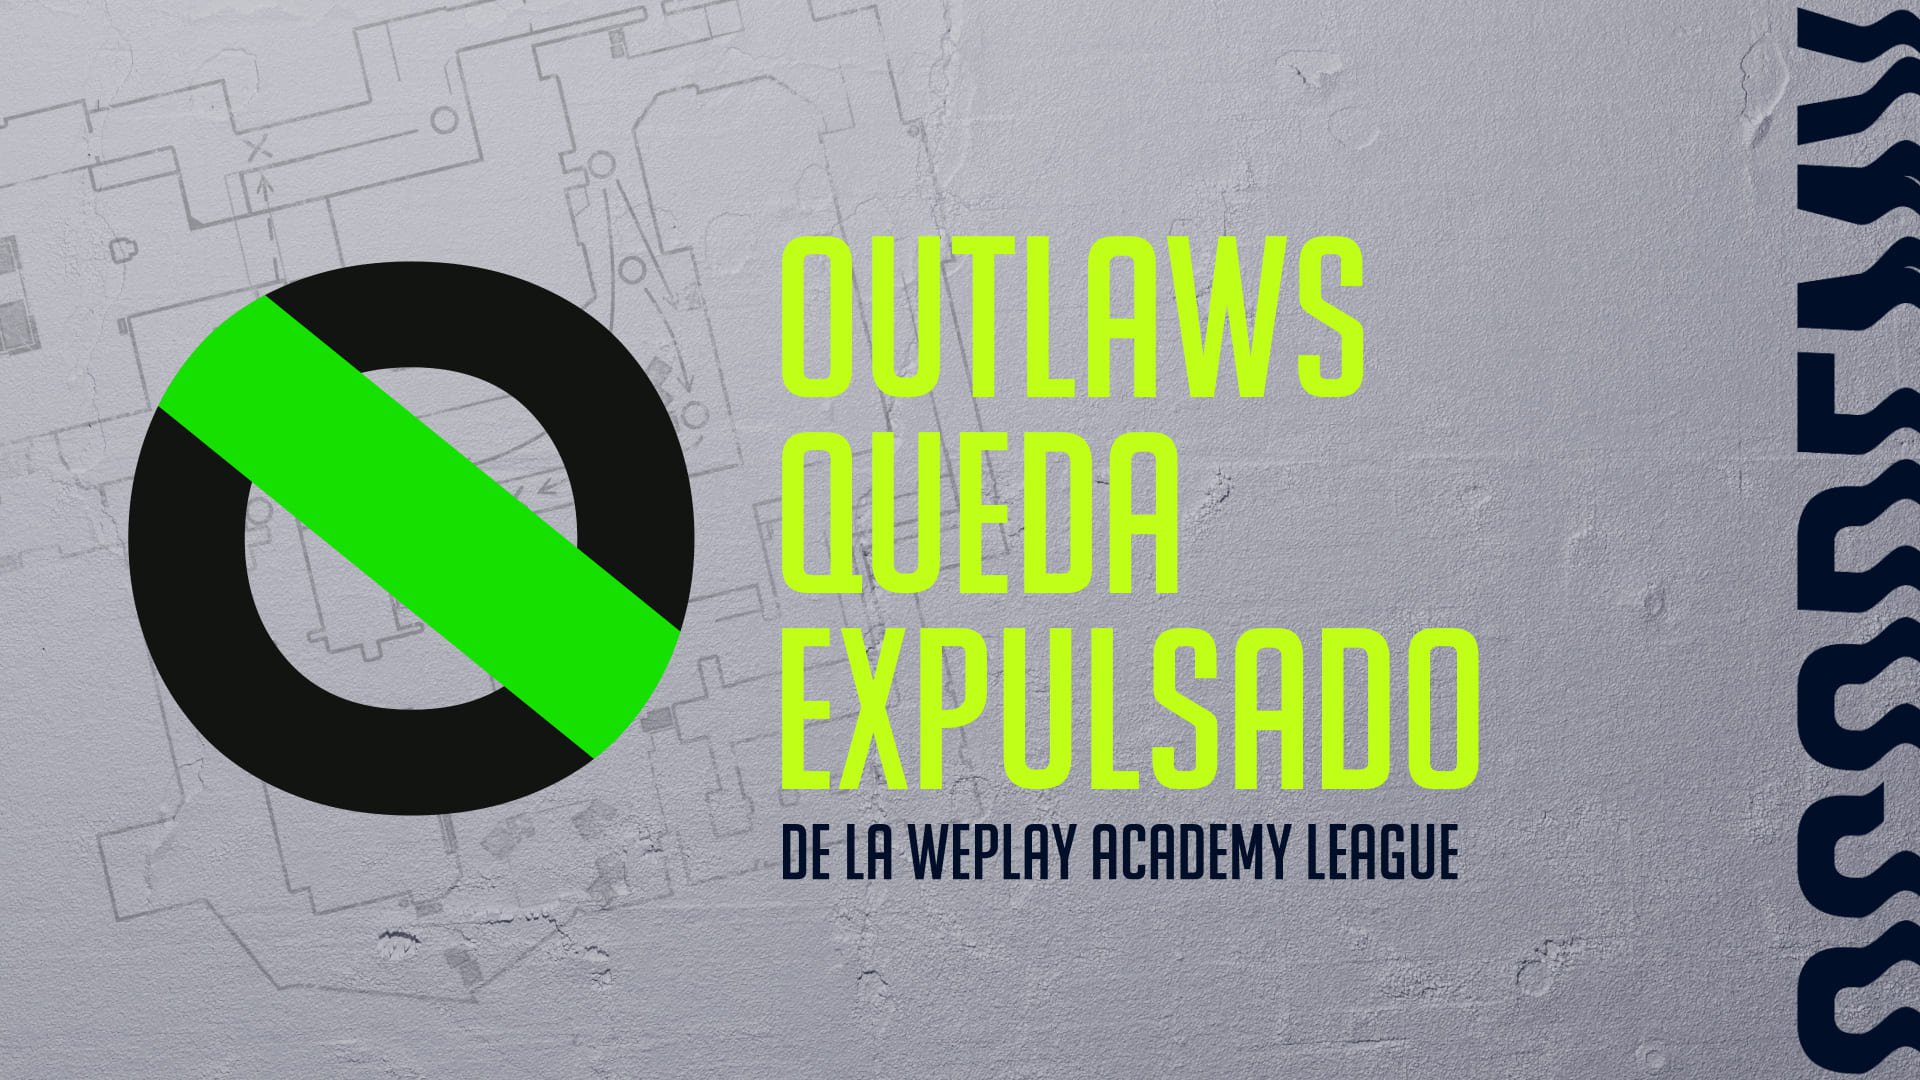 Declaración sobre la eliminación del equipo Outlaws de WePlay Academy League